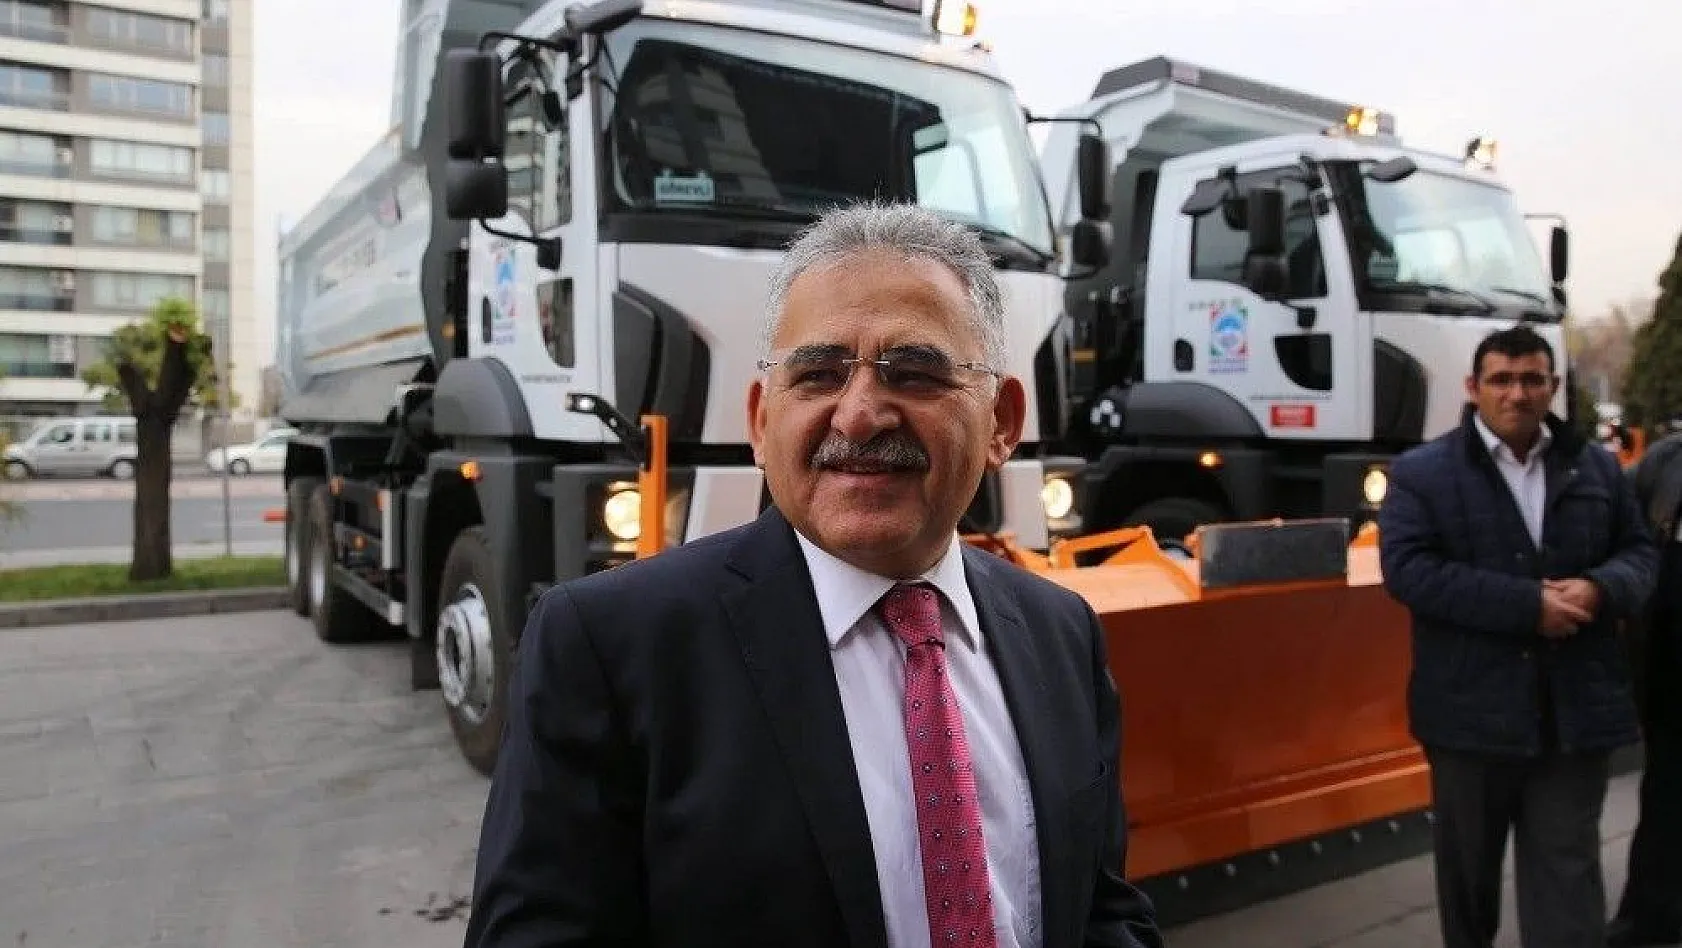 Çevre Temizlik Vergileri ile Melikgazi Belediyesi'ne iki araç alındı